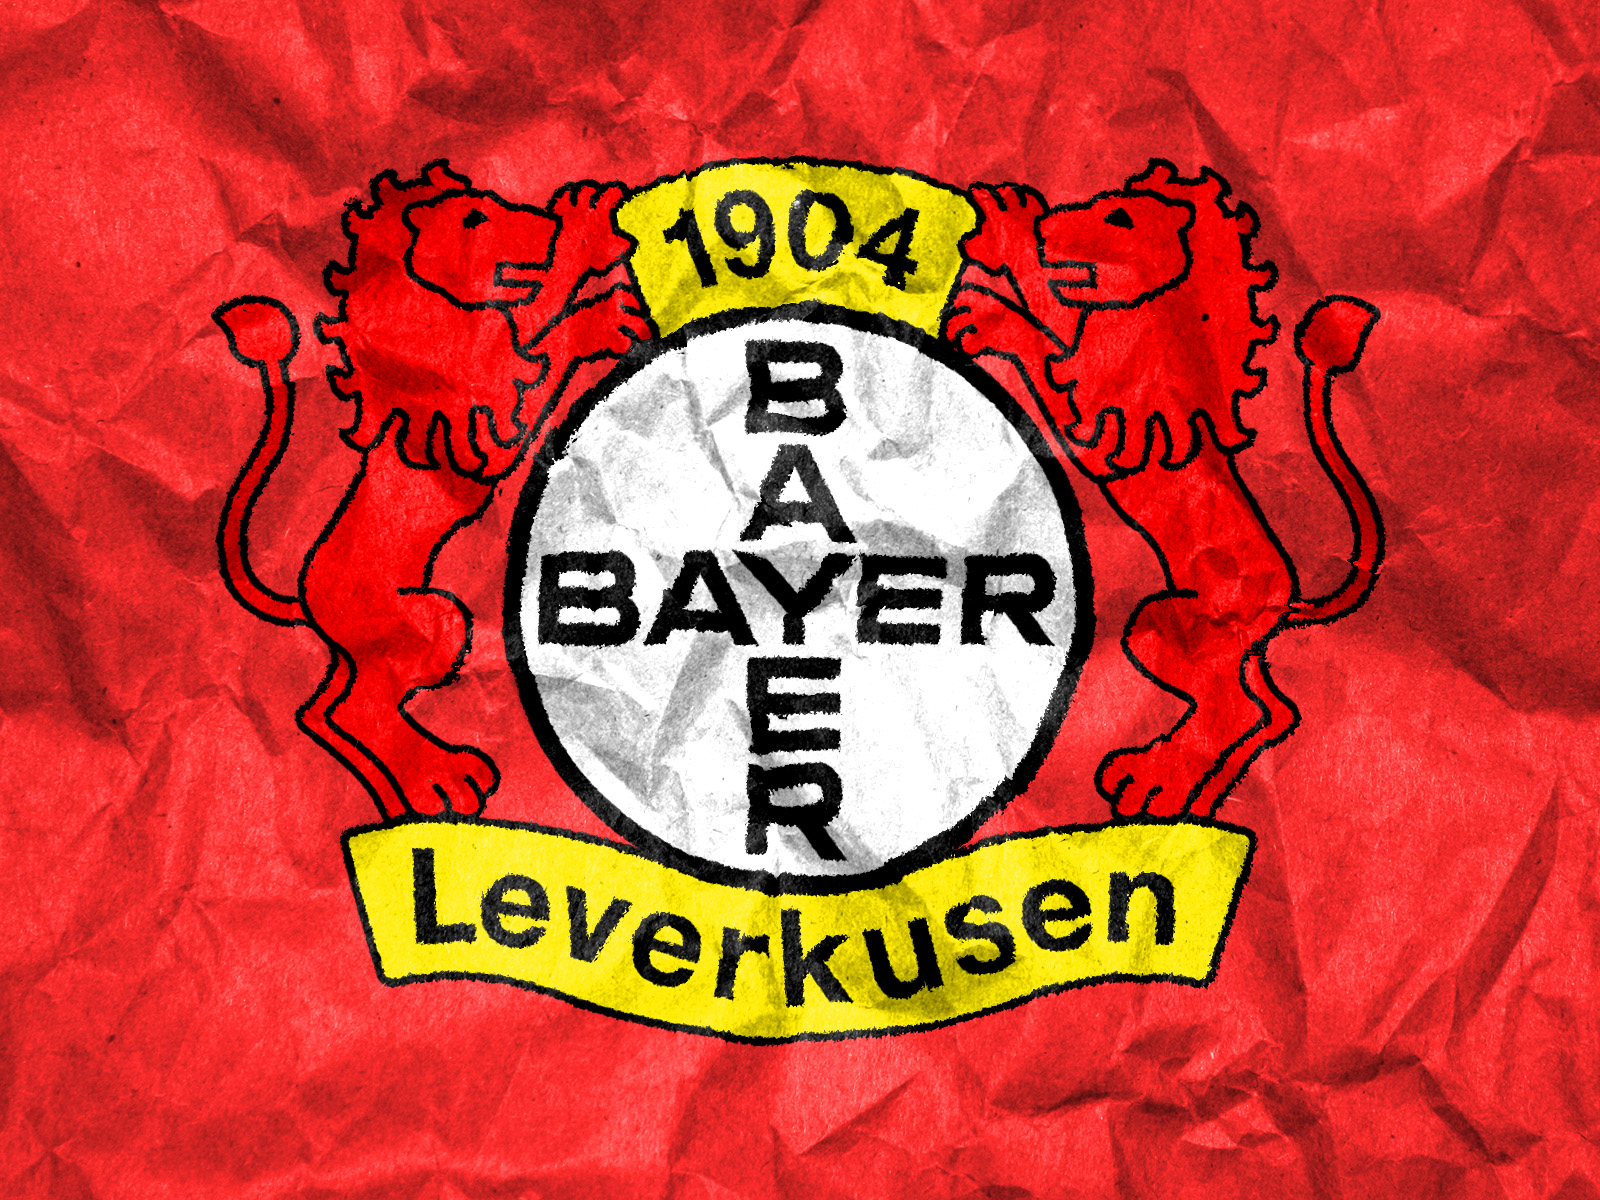 Buyer 04 Leverkusen Ticket